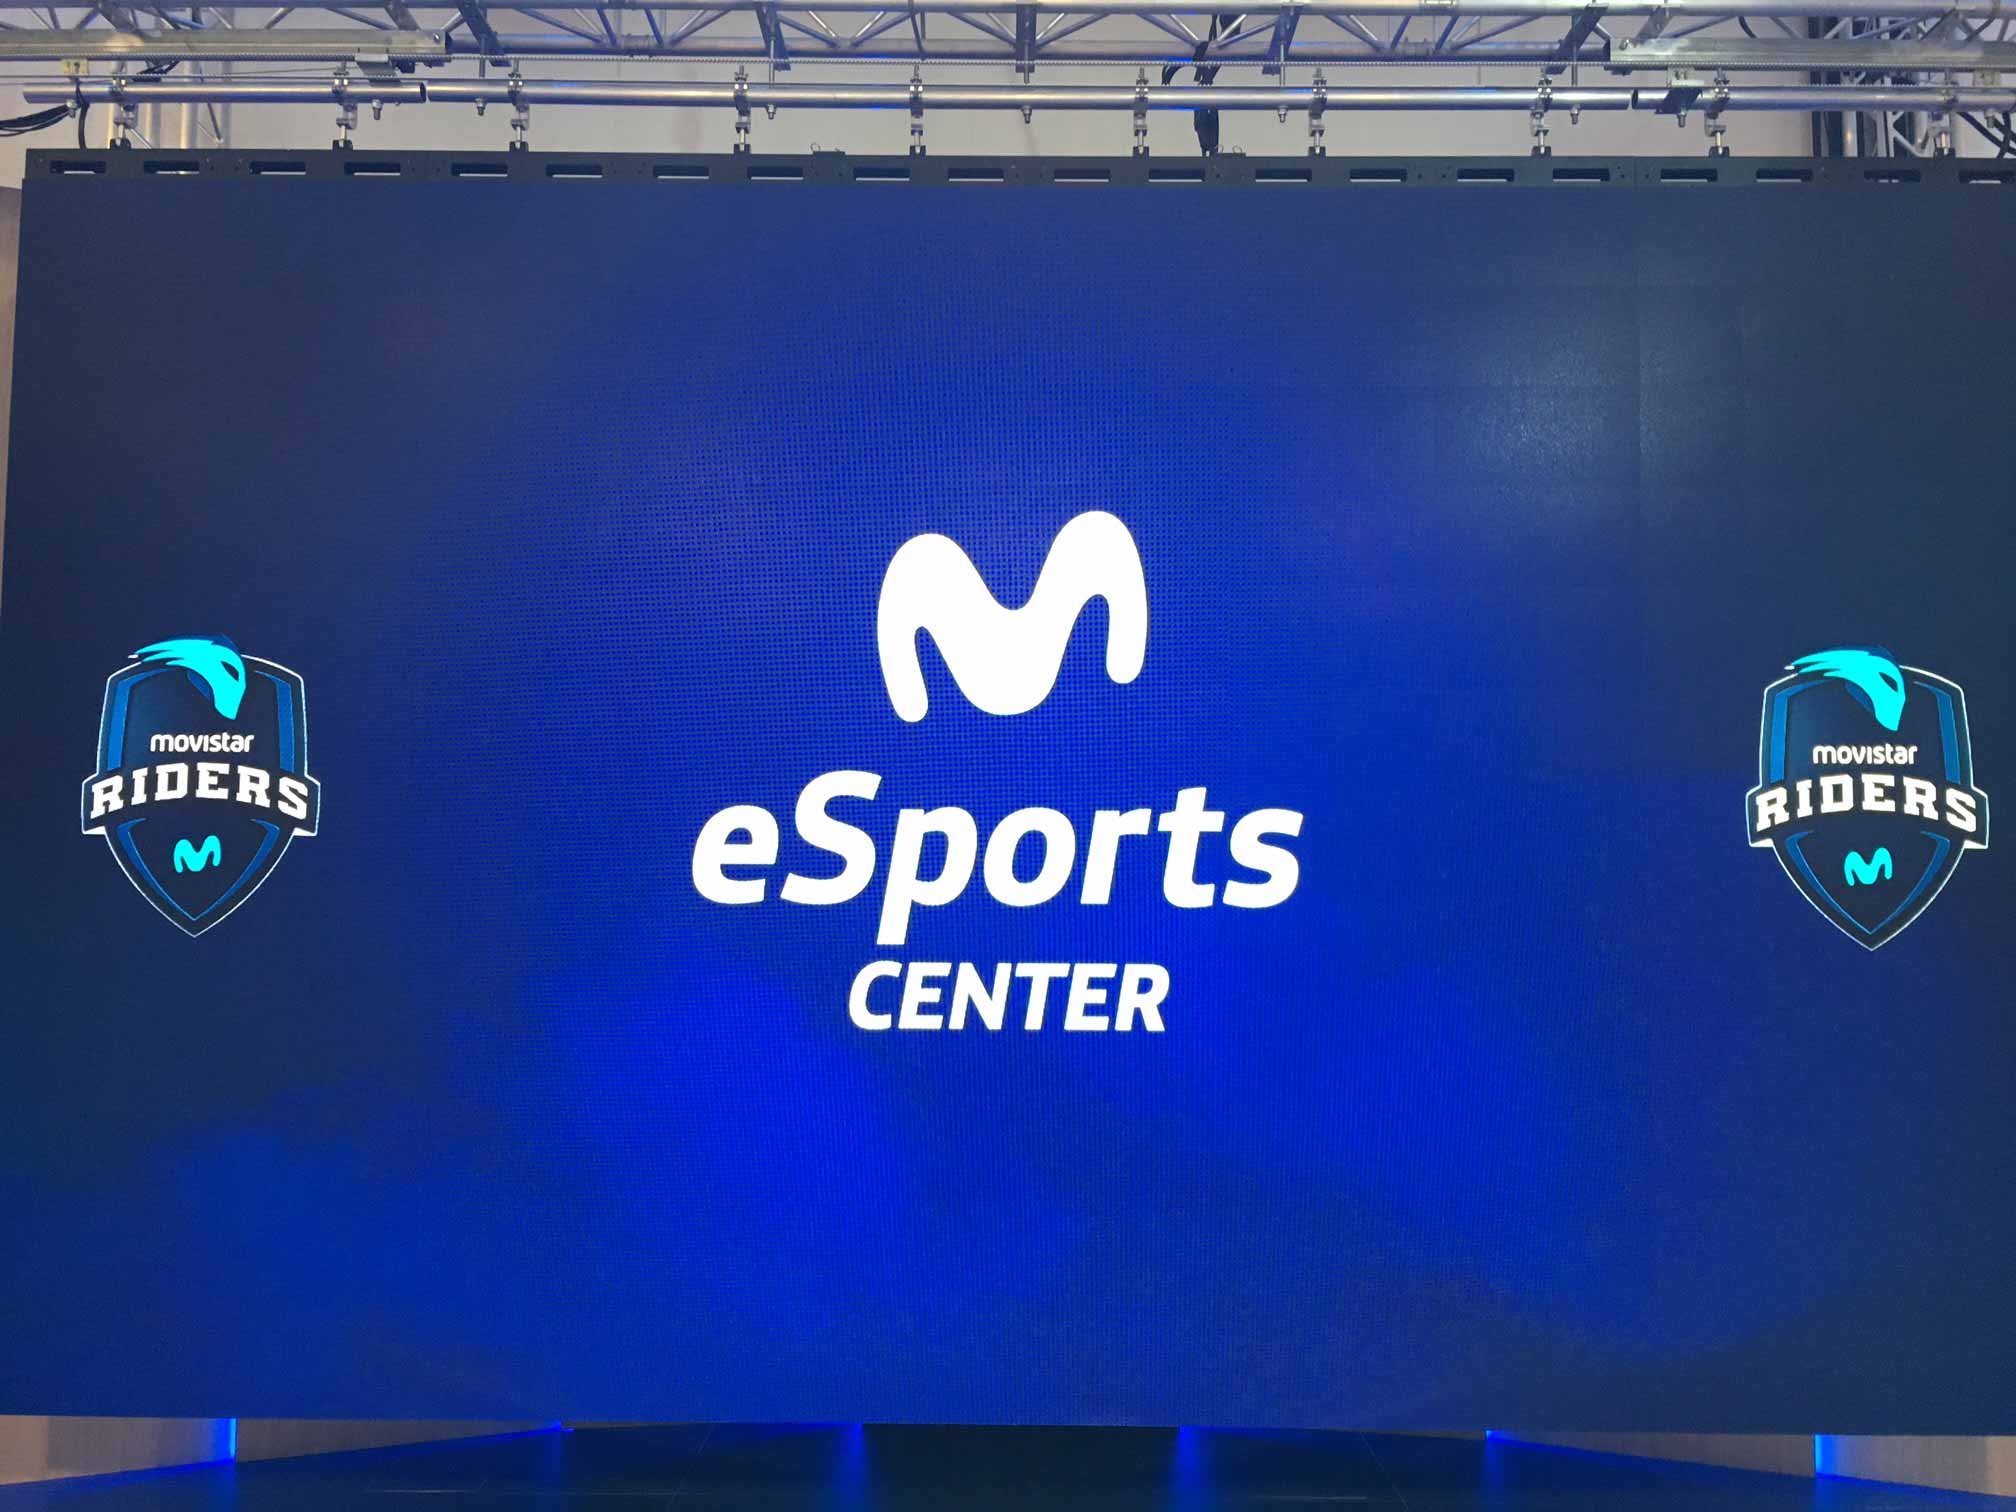 La empresa Movistar crea un espacio de eSports en Madrid